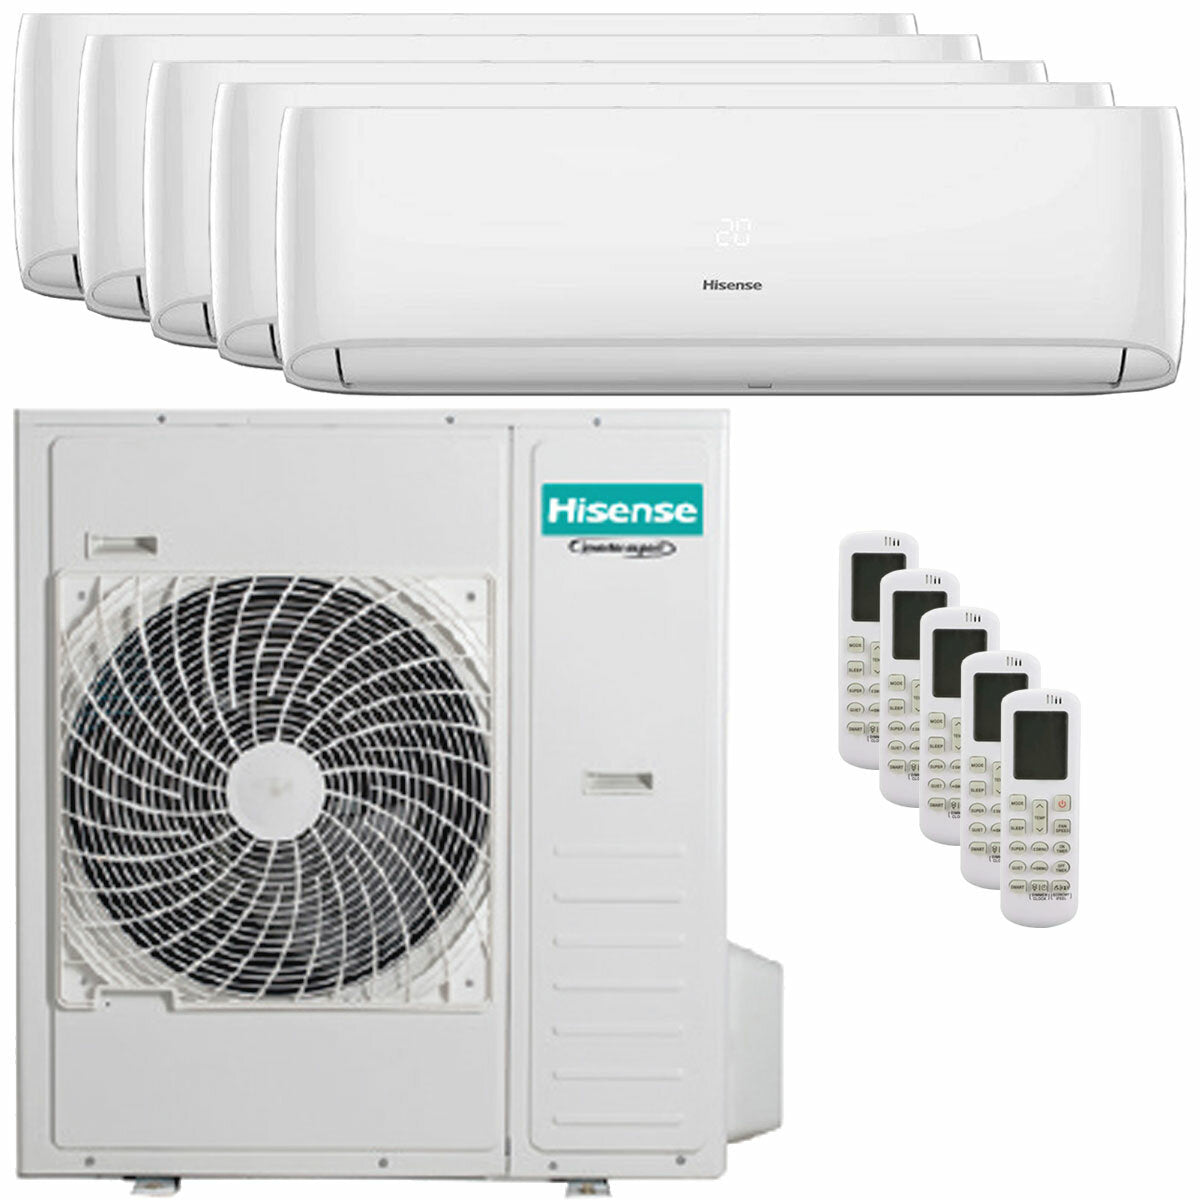 Hisense Hi-Comfort penta split air conditioner 9000 + 9000 + 12000 + 12000 + 12000 BTU wifi inverter outdoor unit 12.5 kW